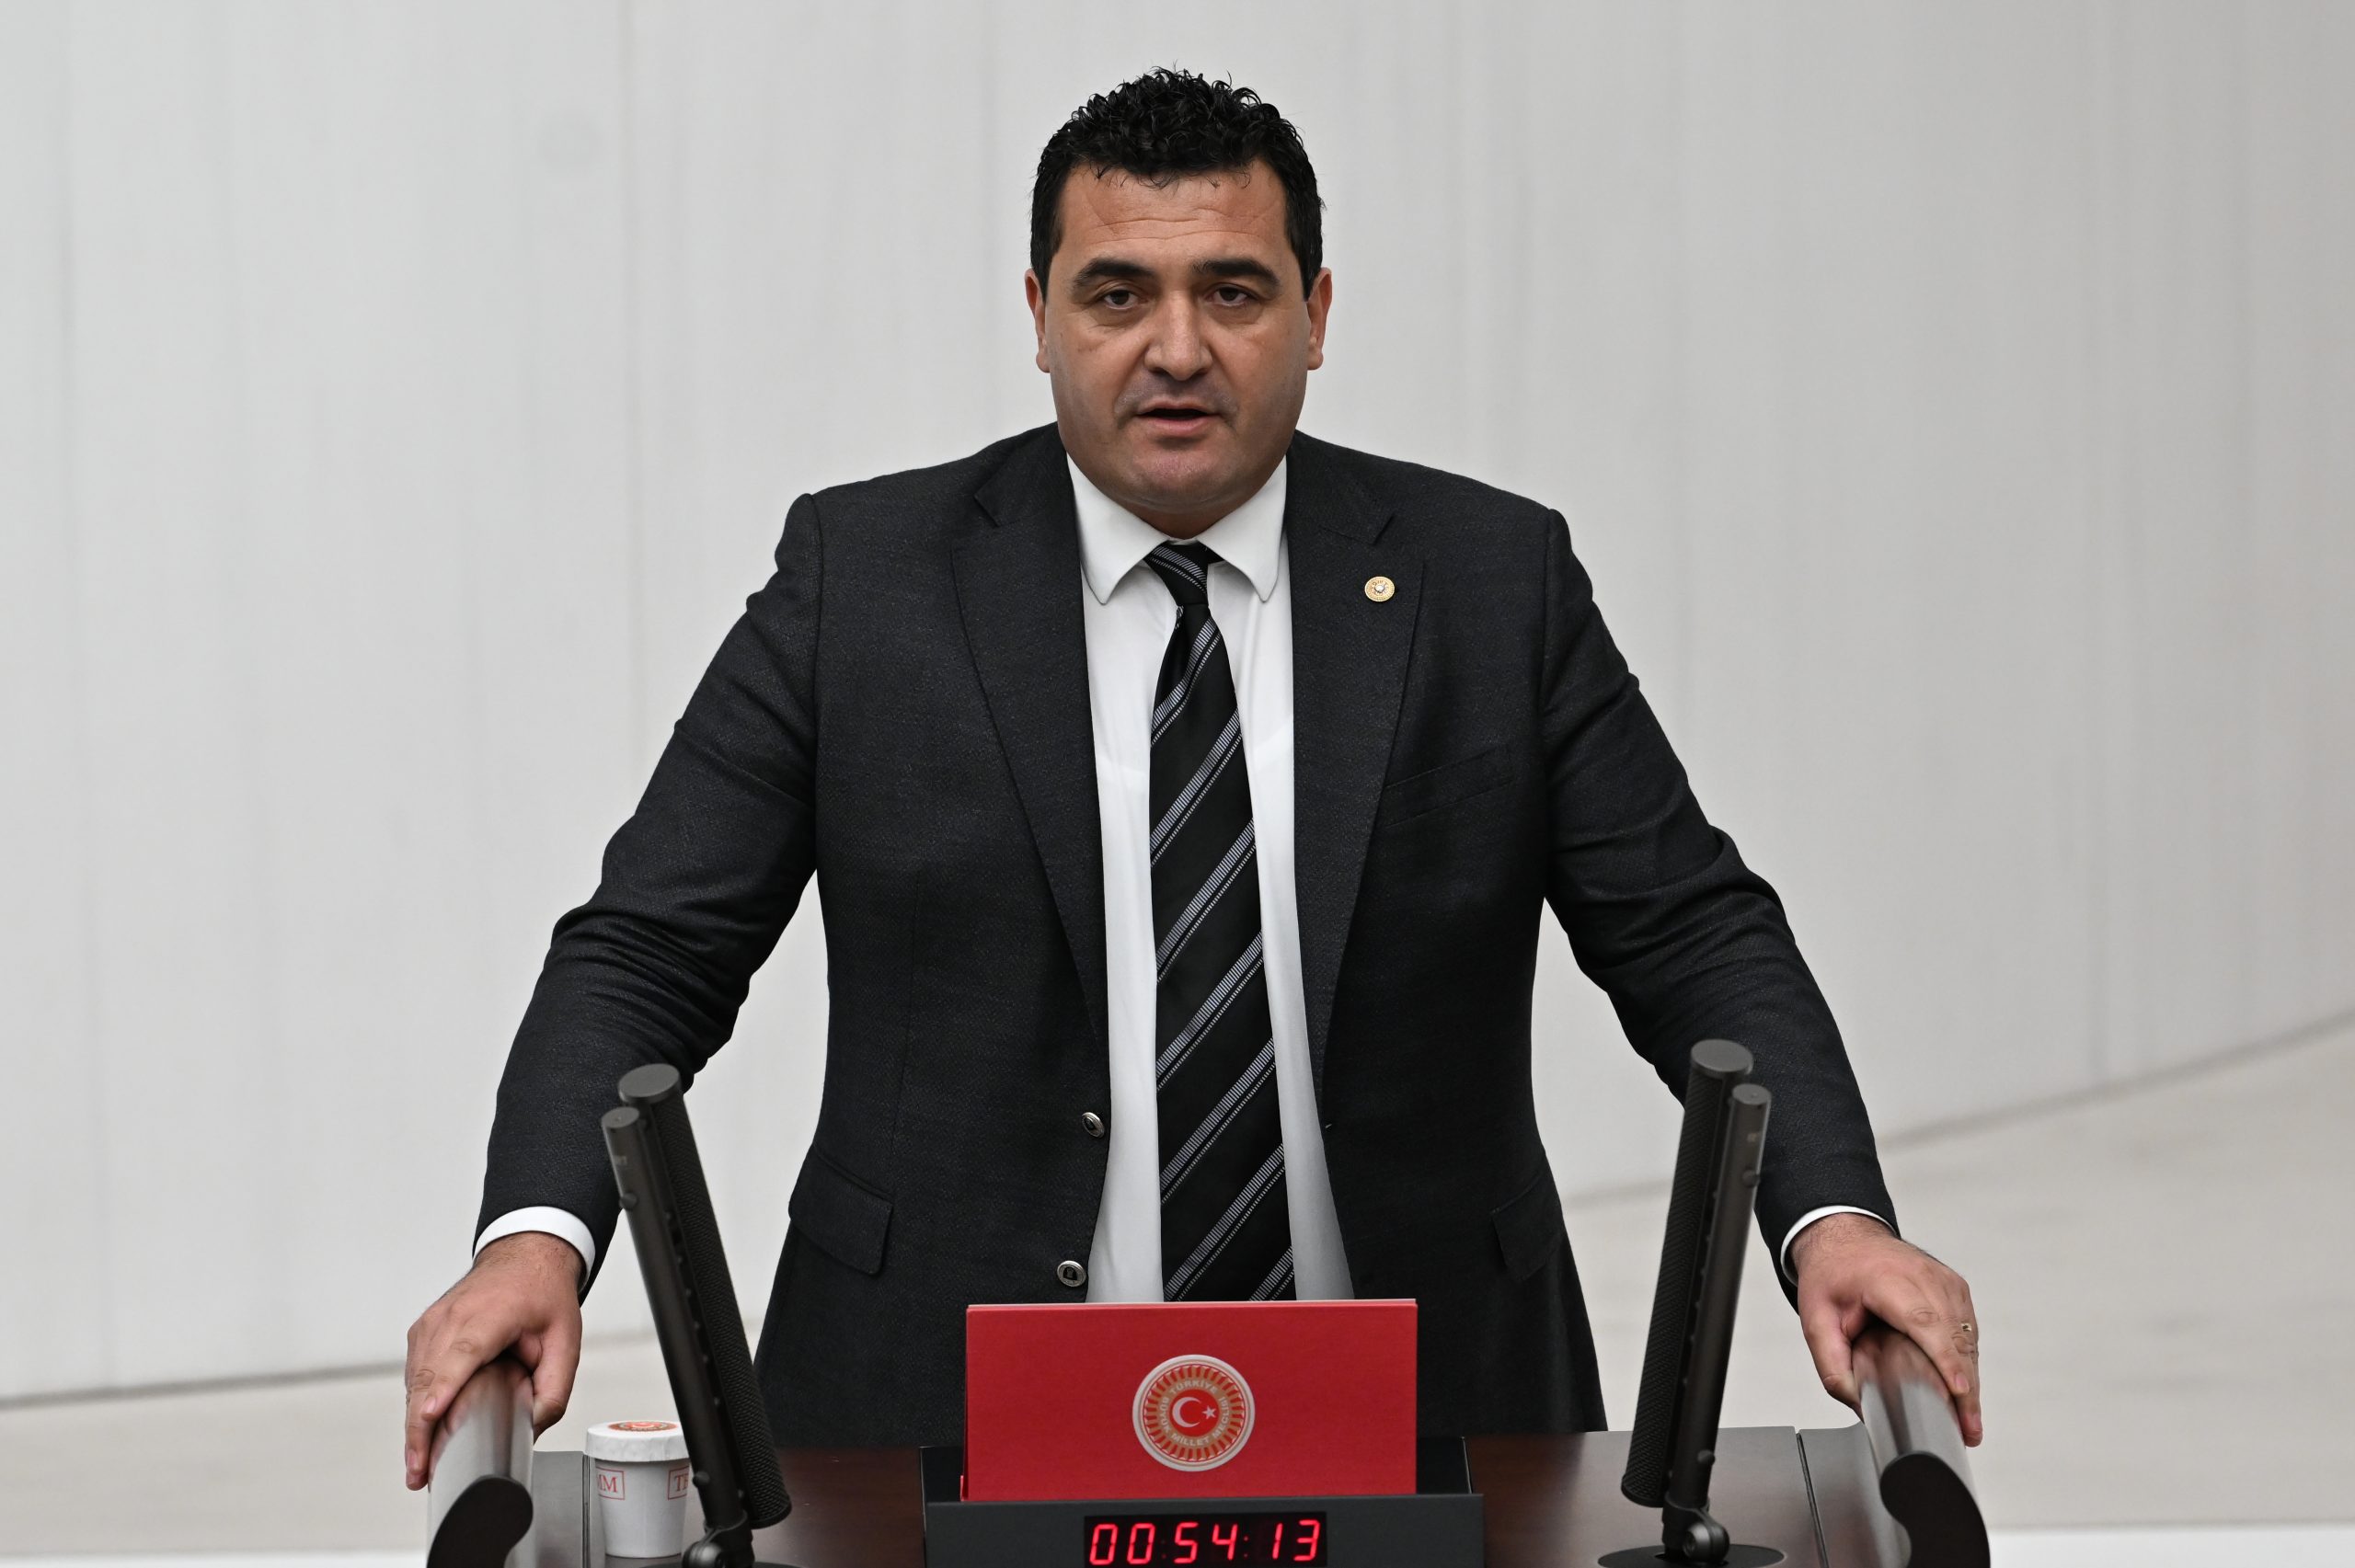 CHP Genel Başkan Yardımcısı-Sivas Milletvekili  TBMM Bayındırlık, İmar, Ulaştırma Ve Turizm Komisyonu Üyesi Ulaş Karasu 1 Mayıs Mesajı